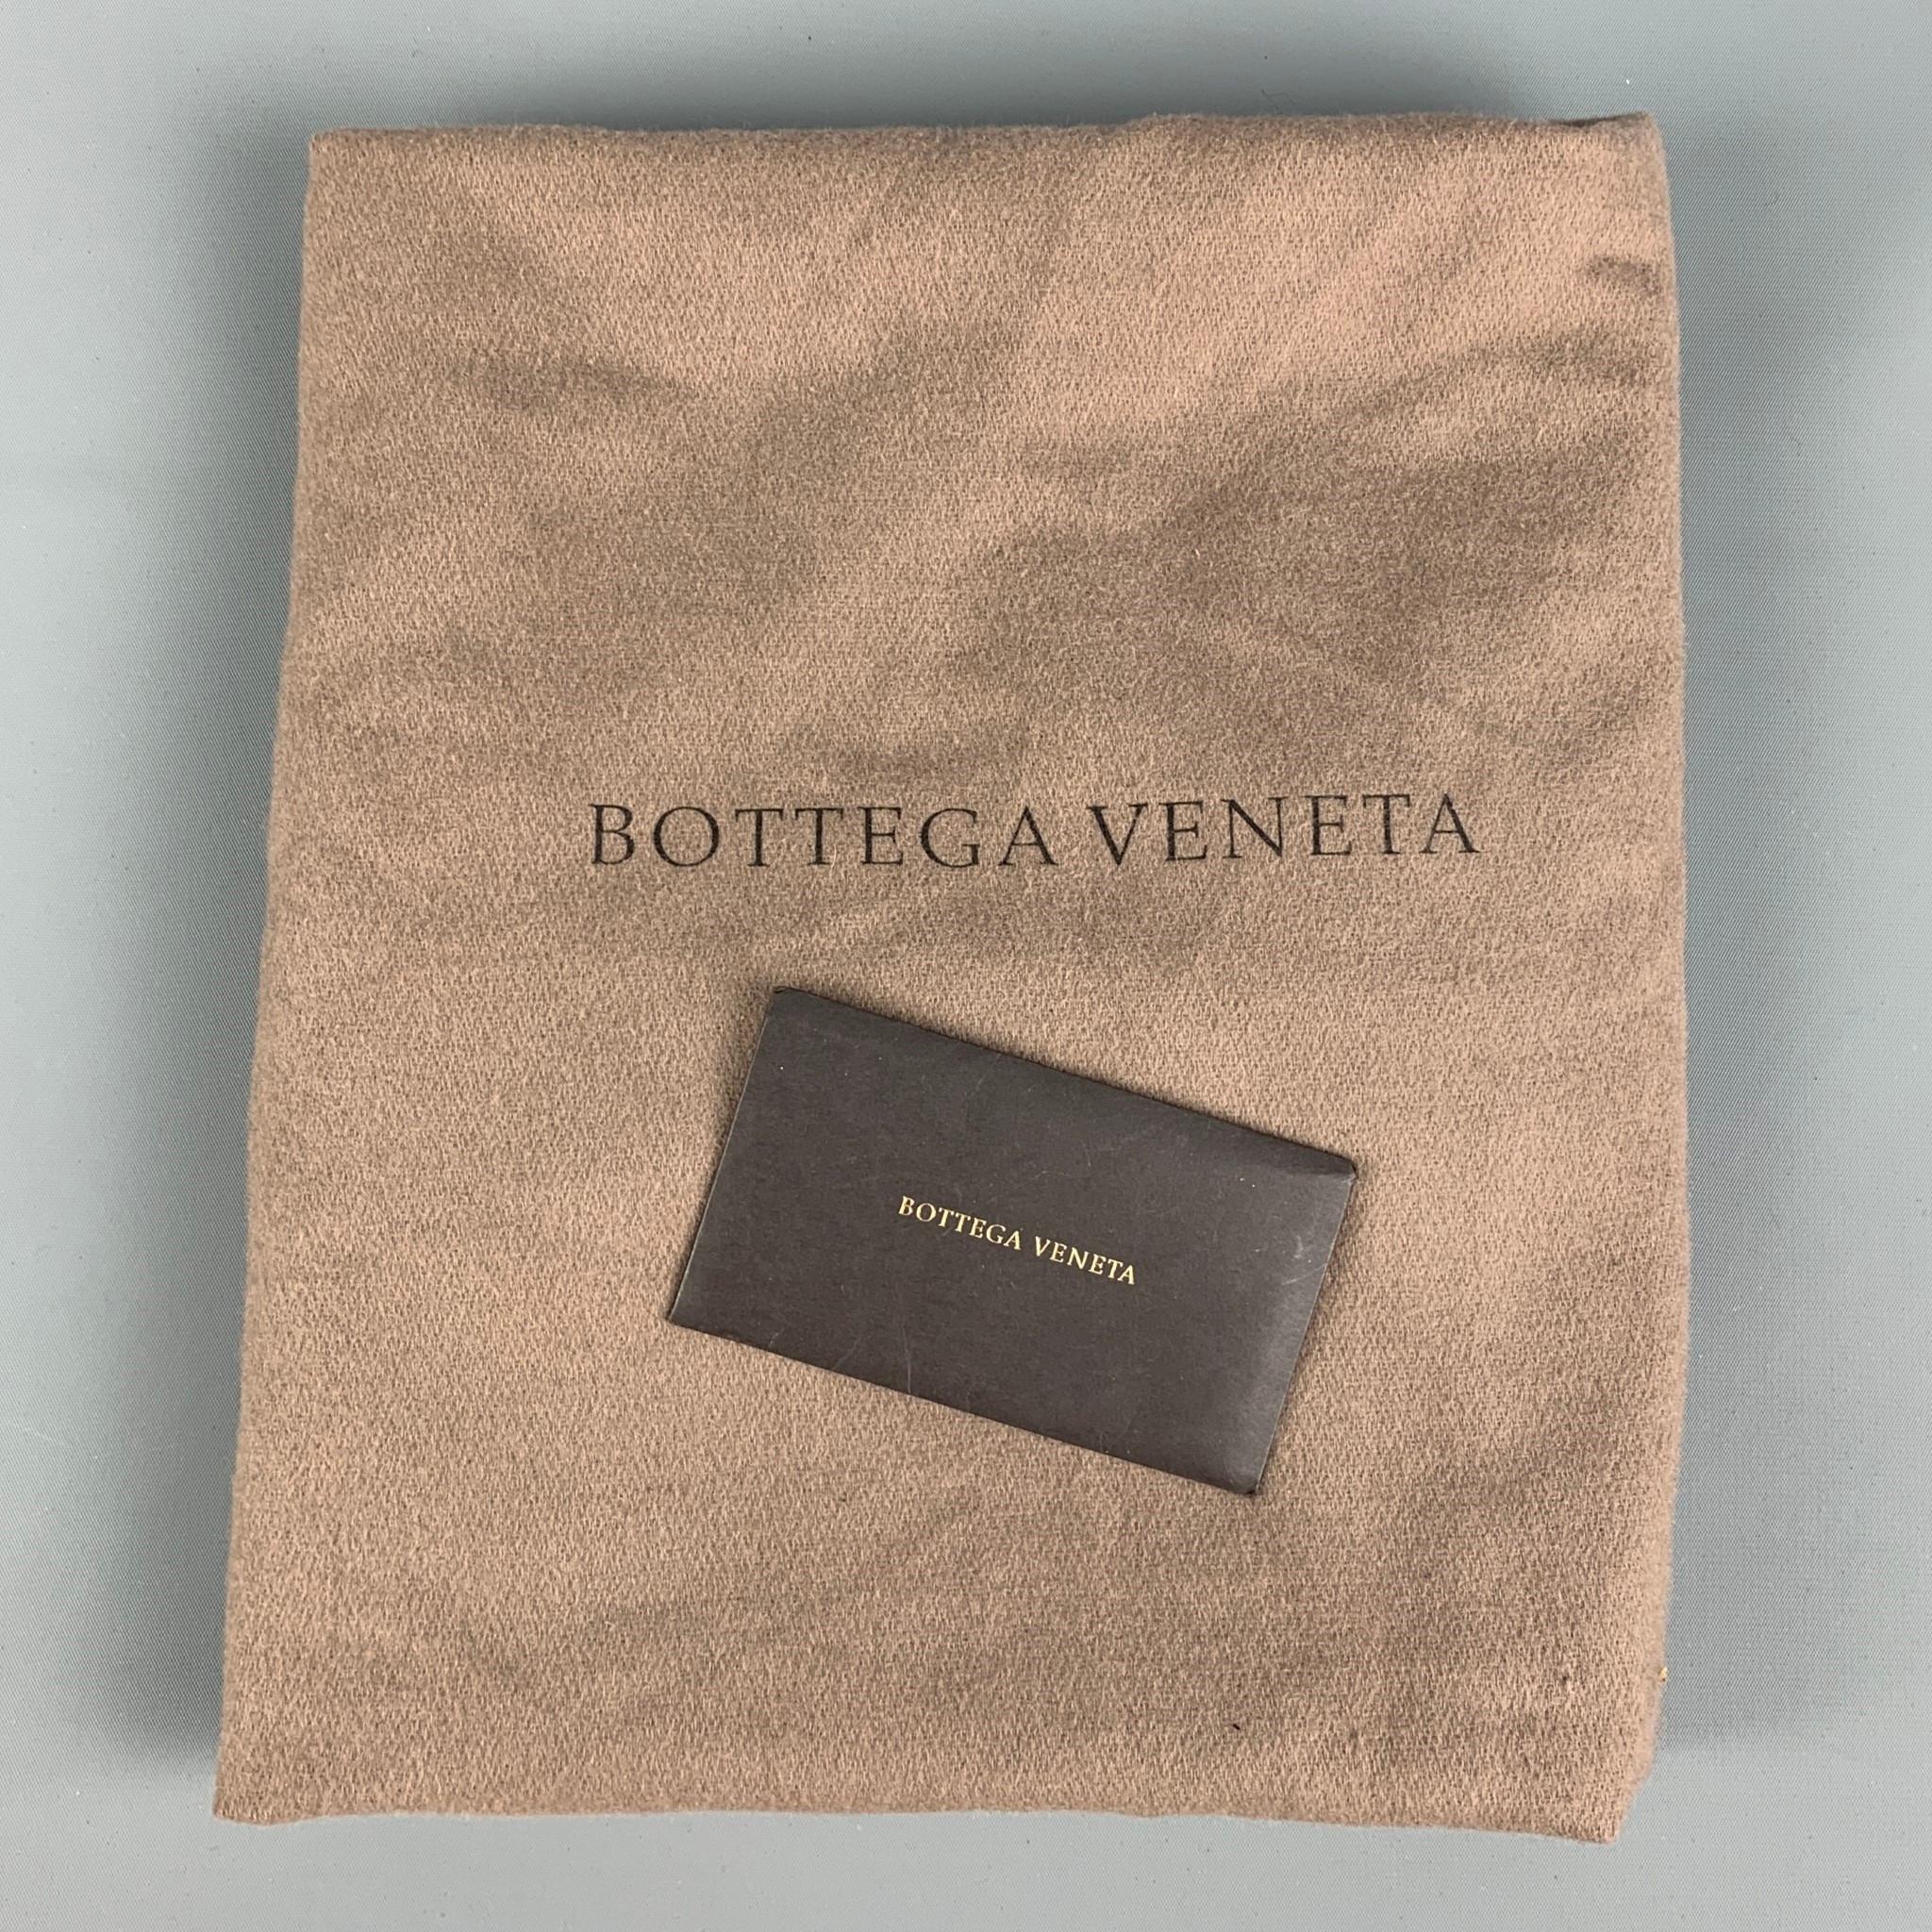 BOTTEGA VENETA Black Leather Maxi Inrecciato Jodie Handbag 2